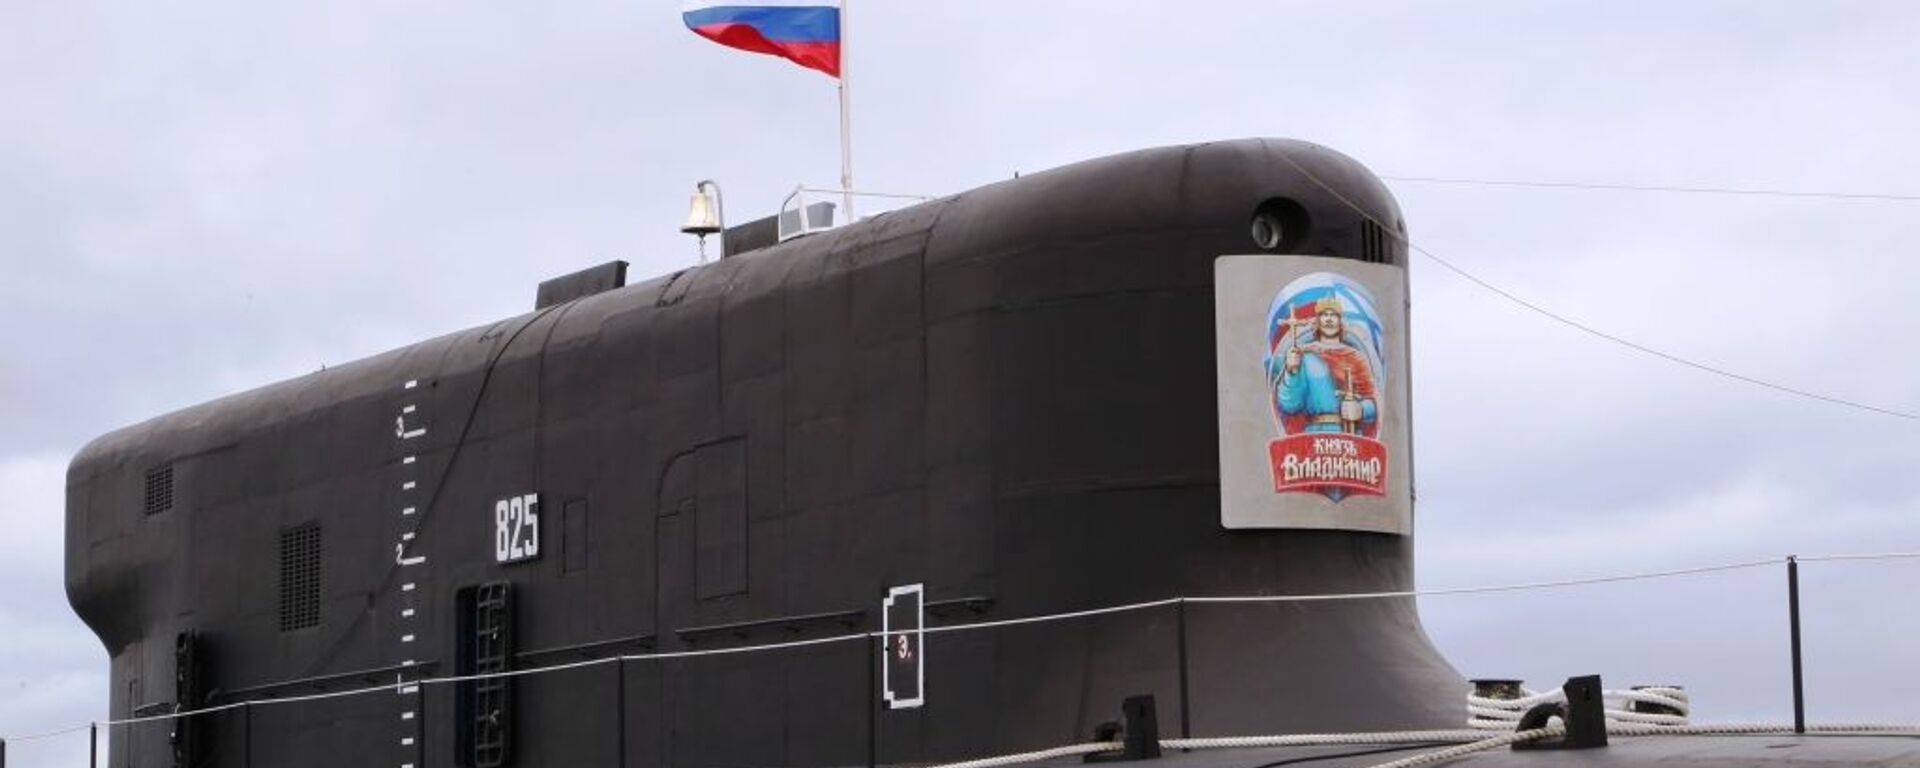 Поднятие Андреевского флага на атомной подводной лодке Князь Владимир - Sputnik Ўзбекистон, 1920, 21.04.2021